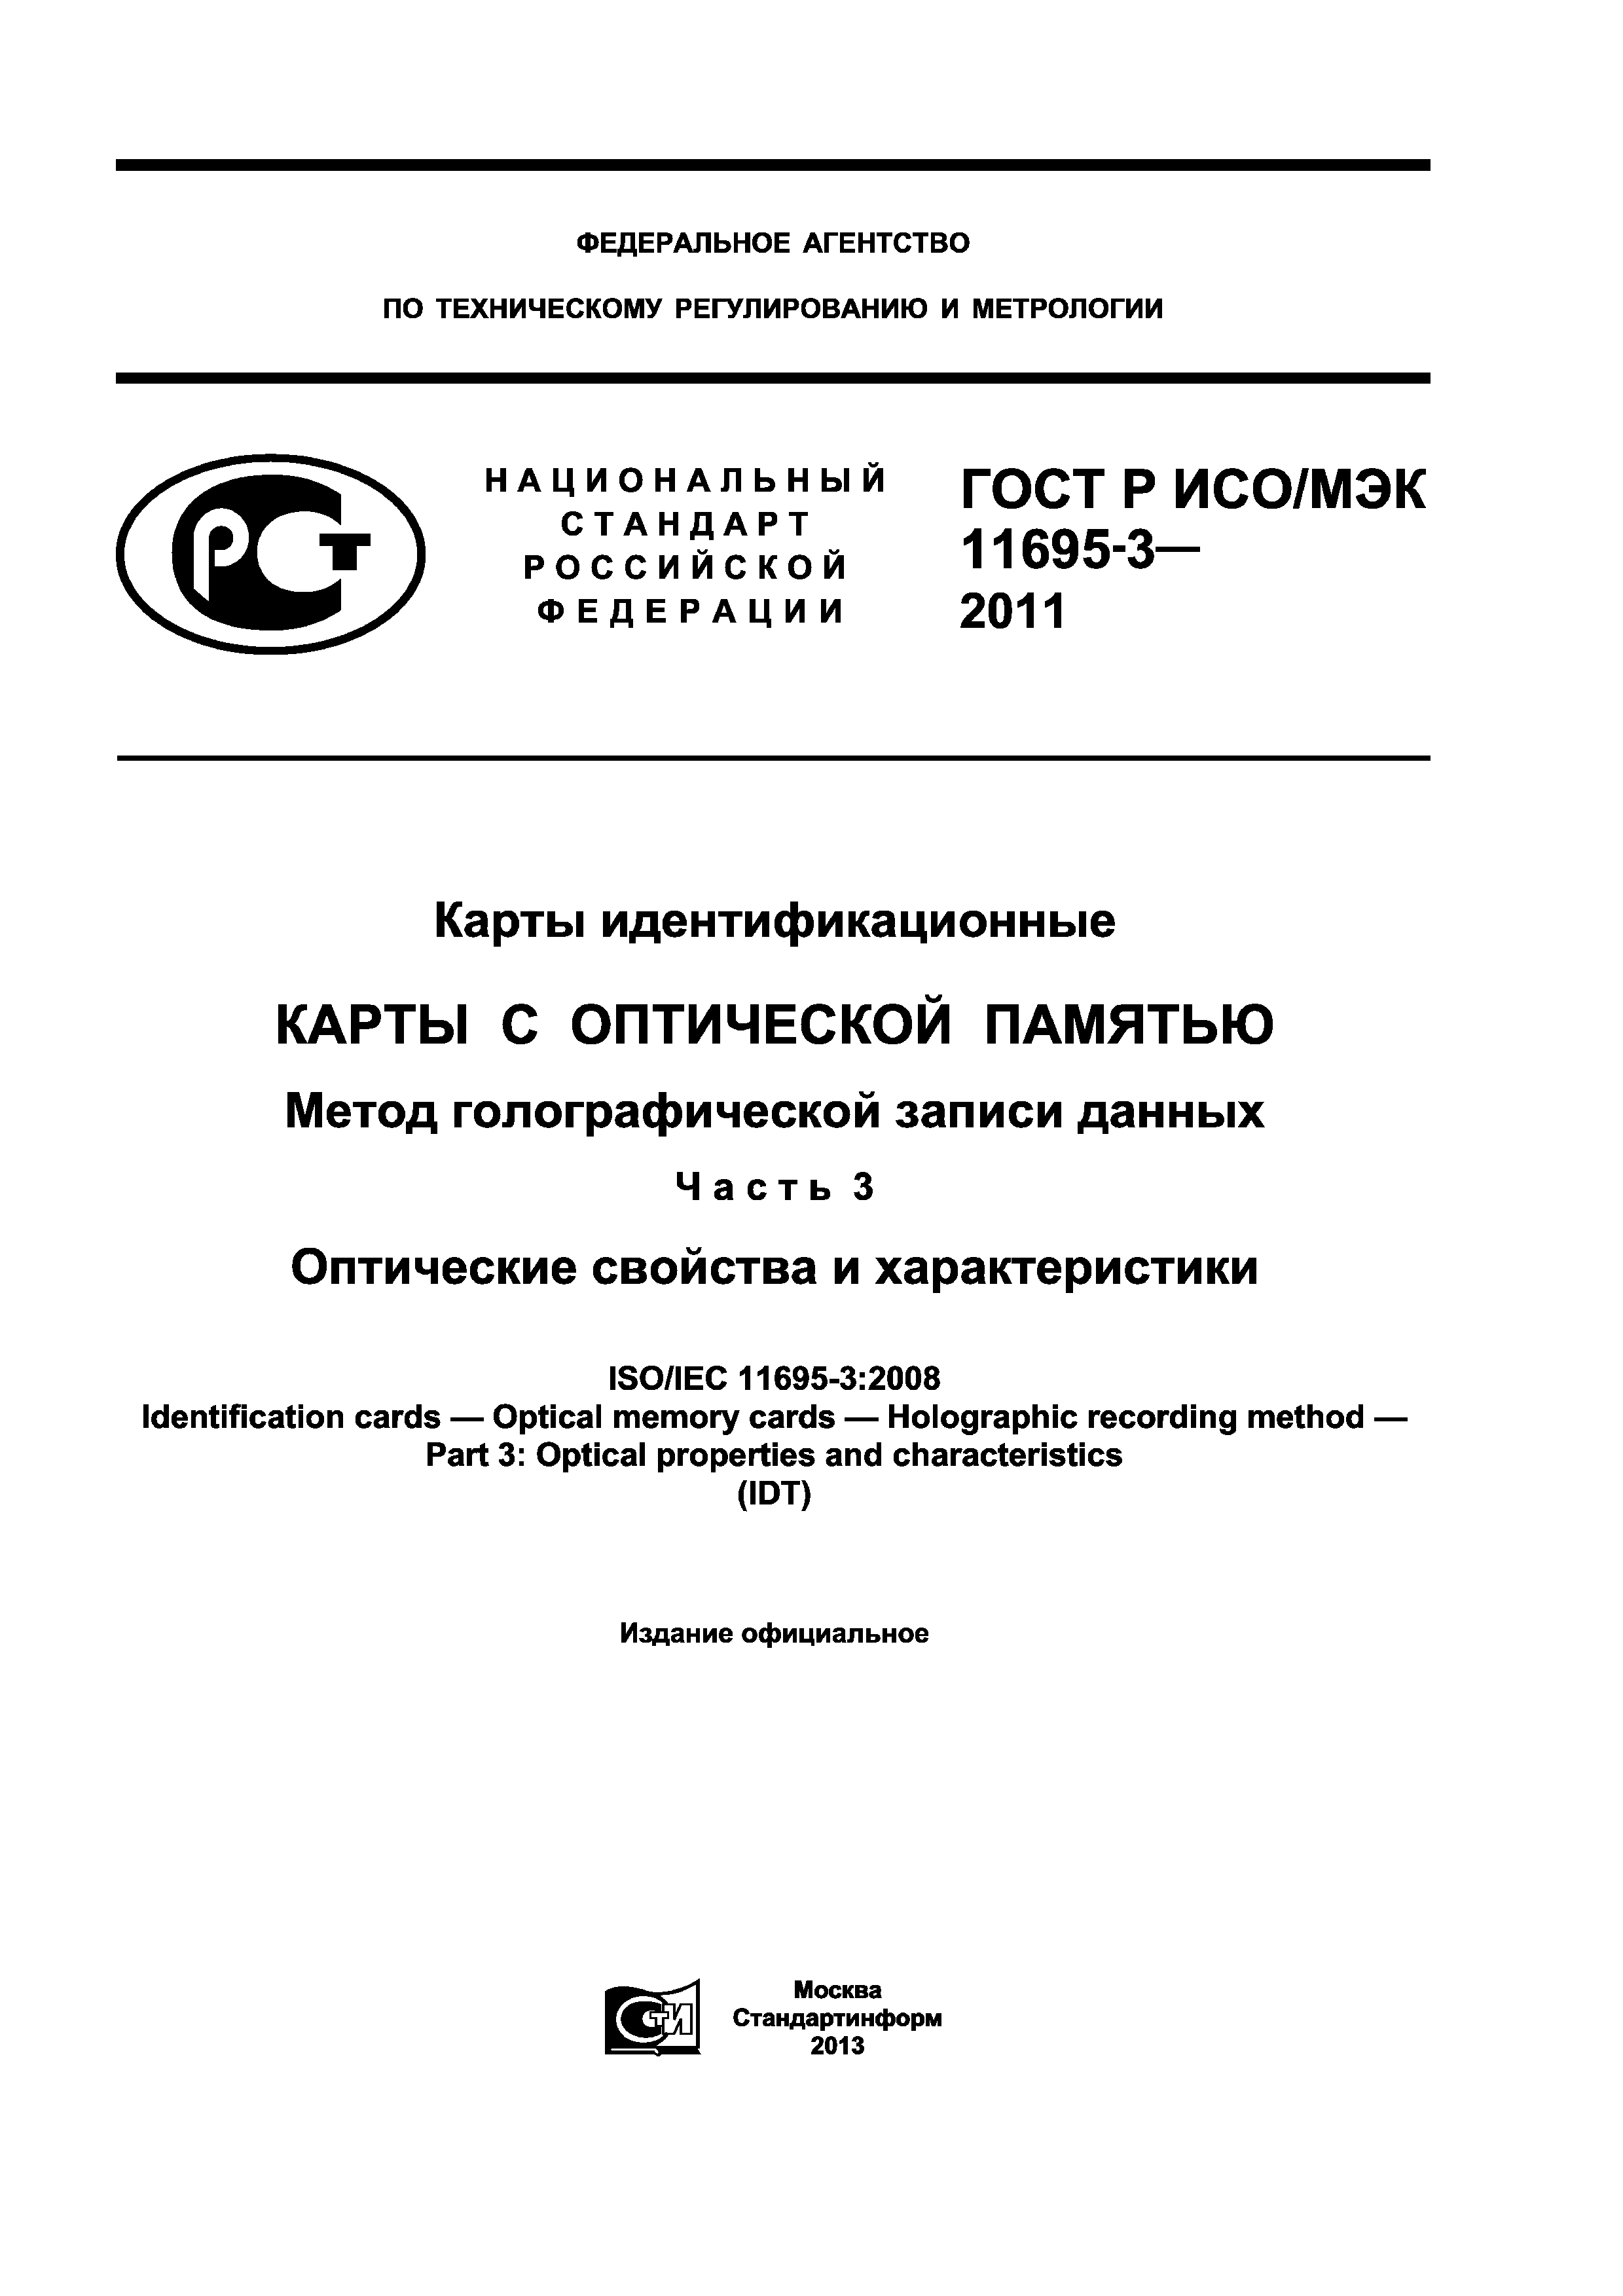 ГОСТ Р ИСО/МЭК 11695-3-2011